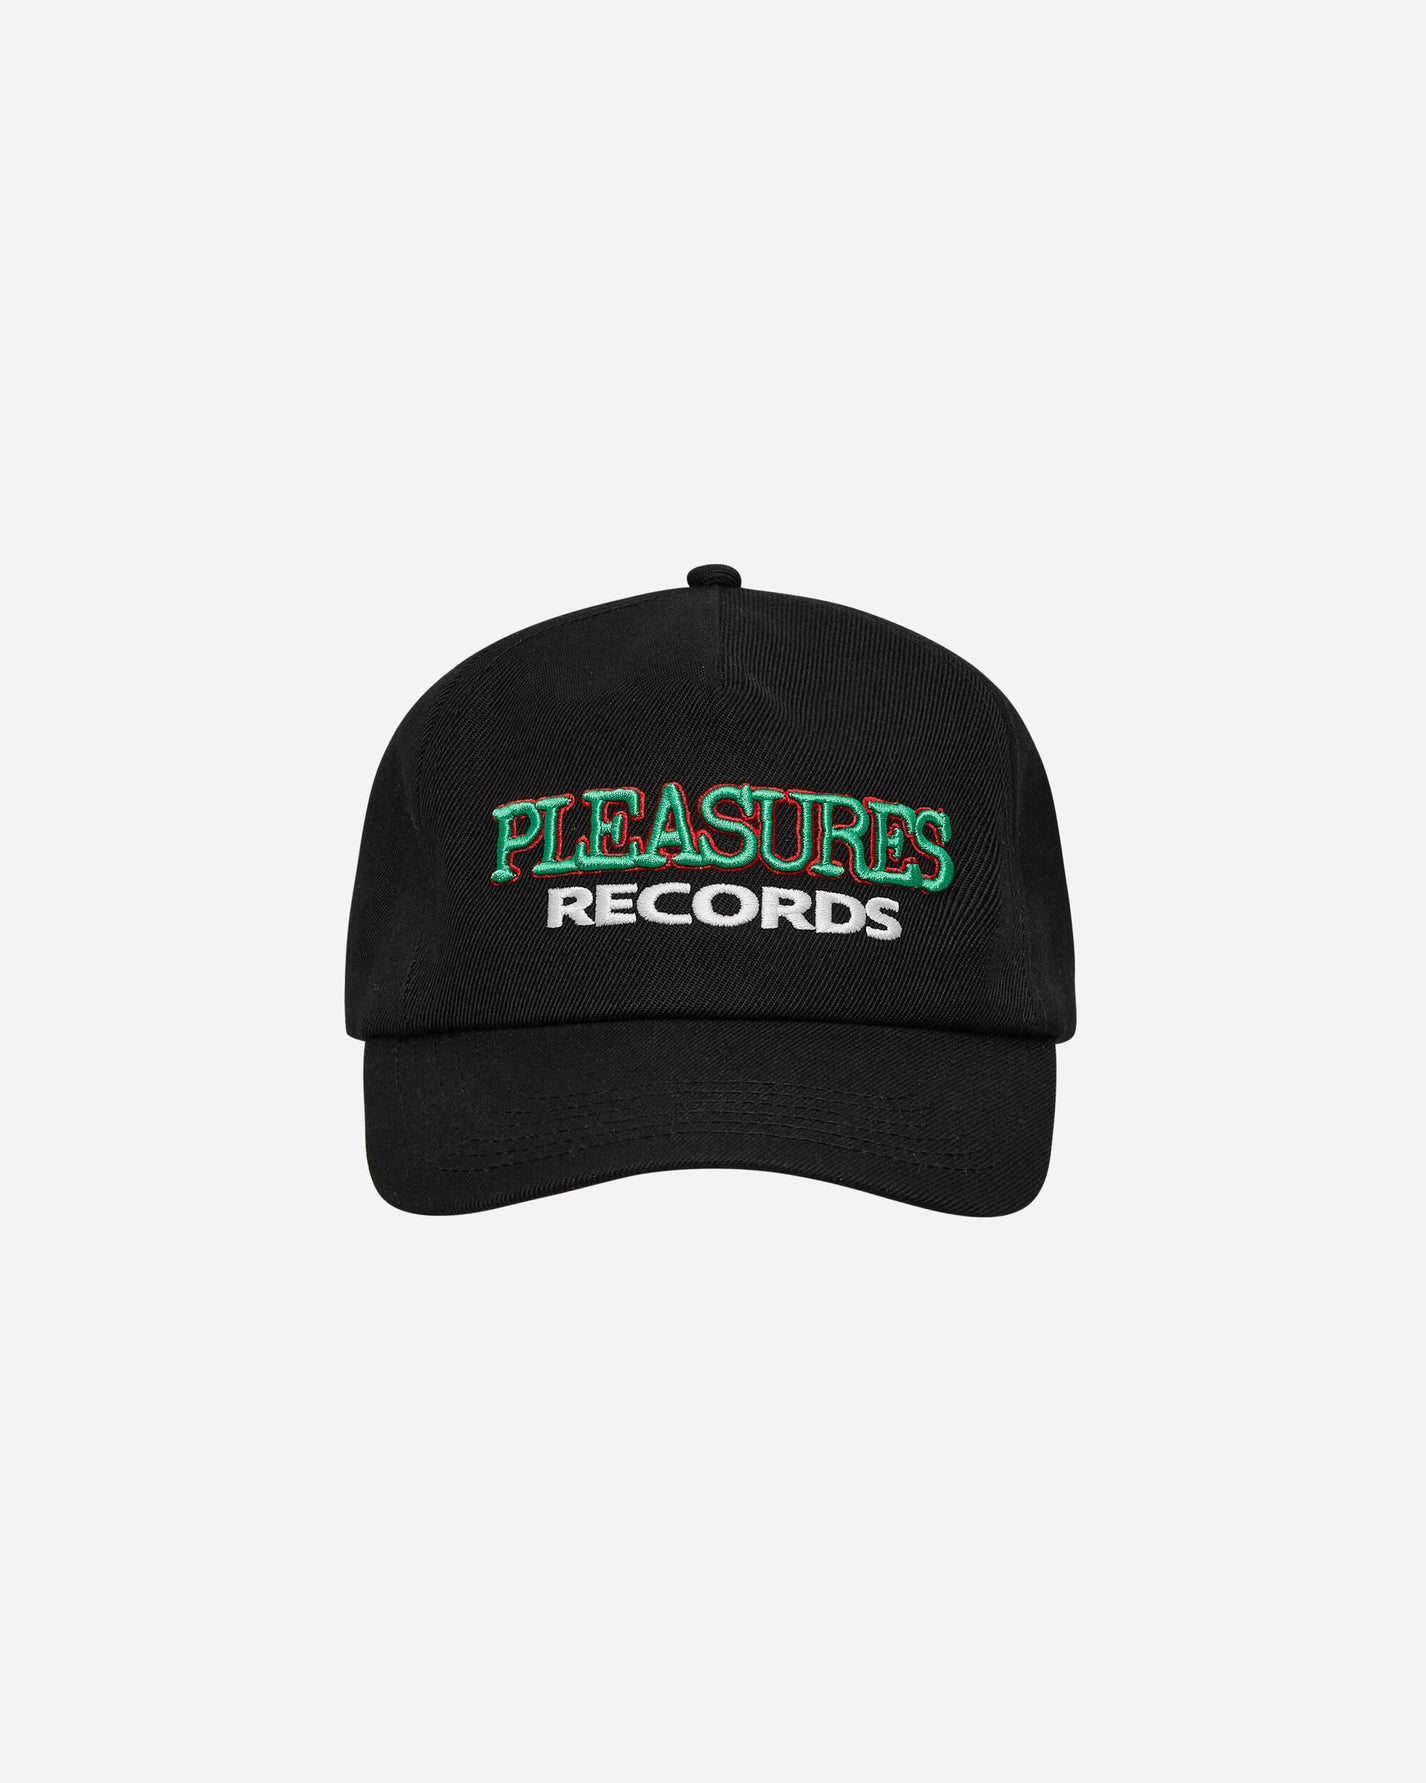 Pleasures Records Snapback Black Hats Caps 9508018 BLACK